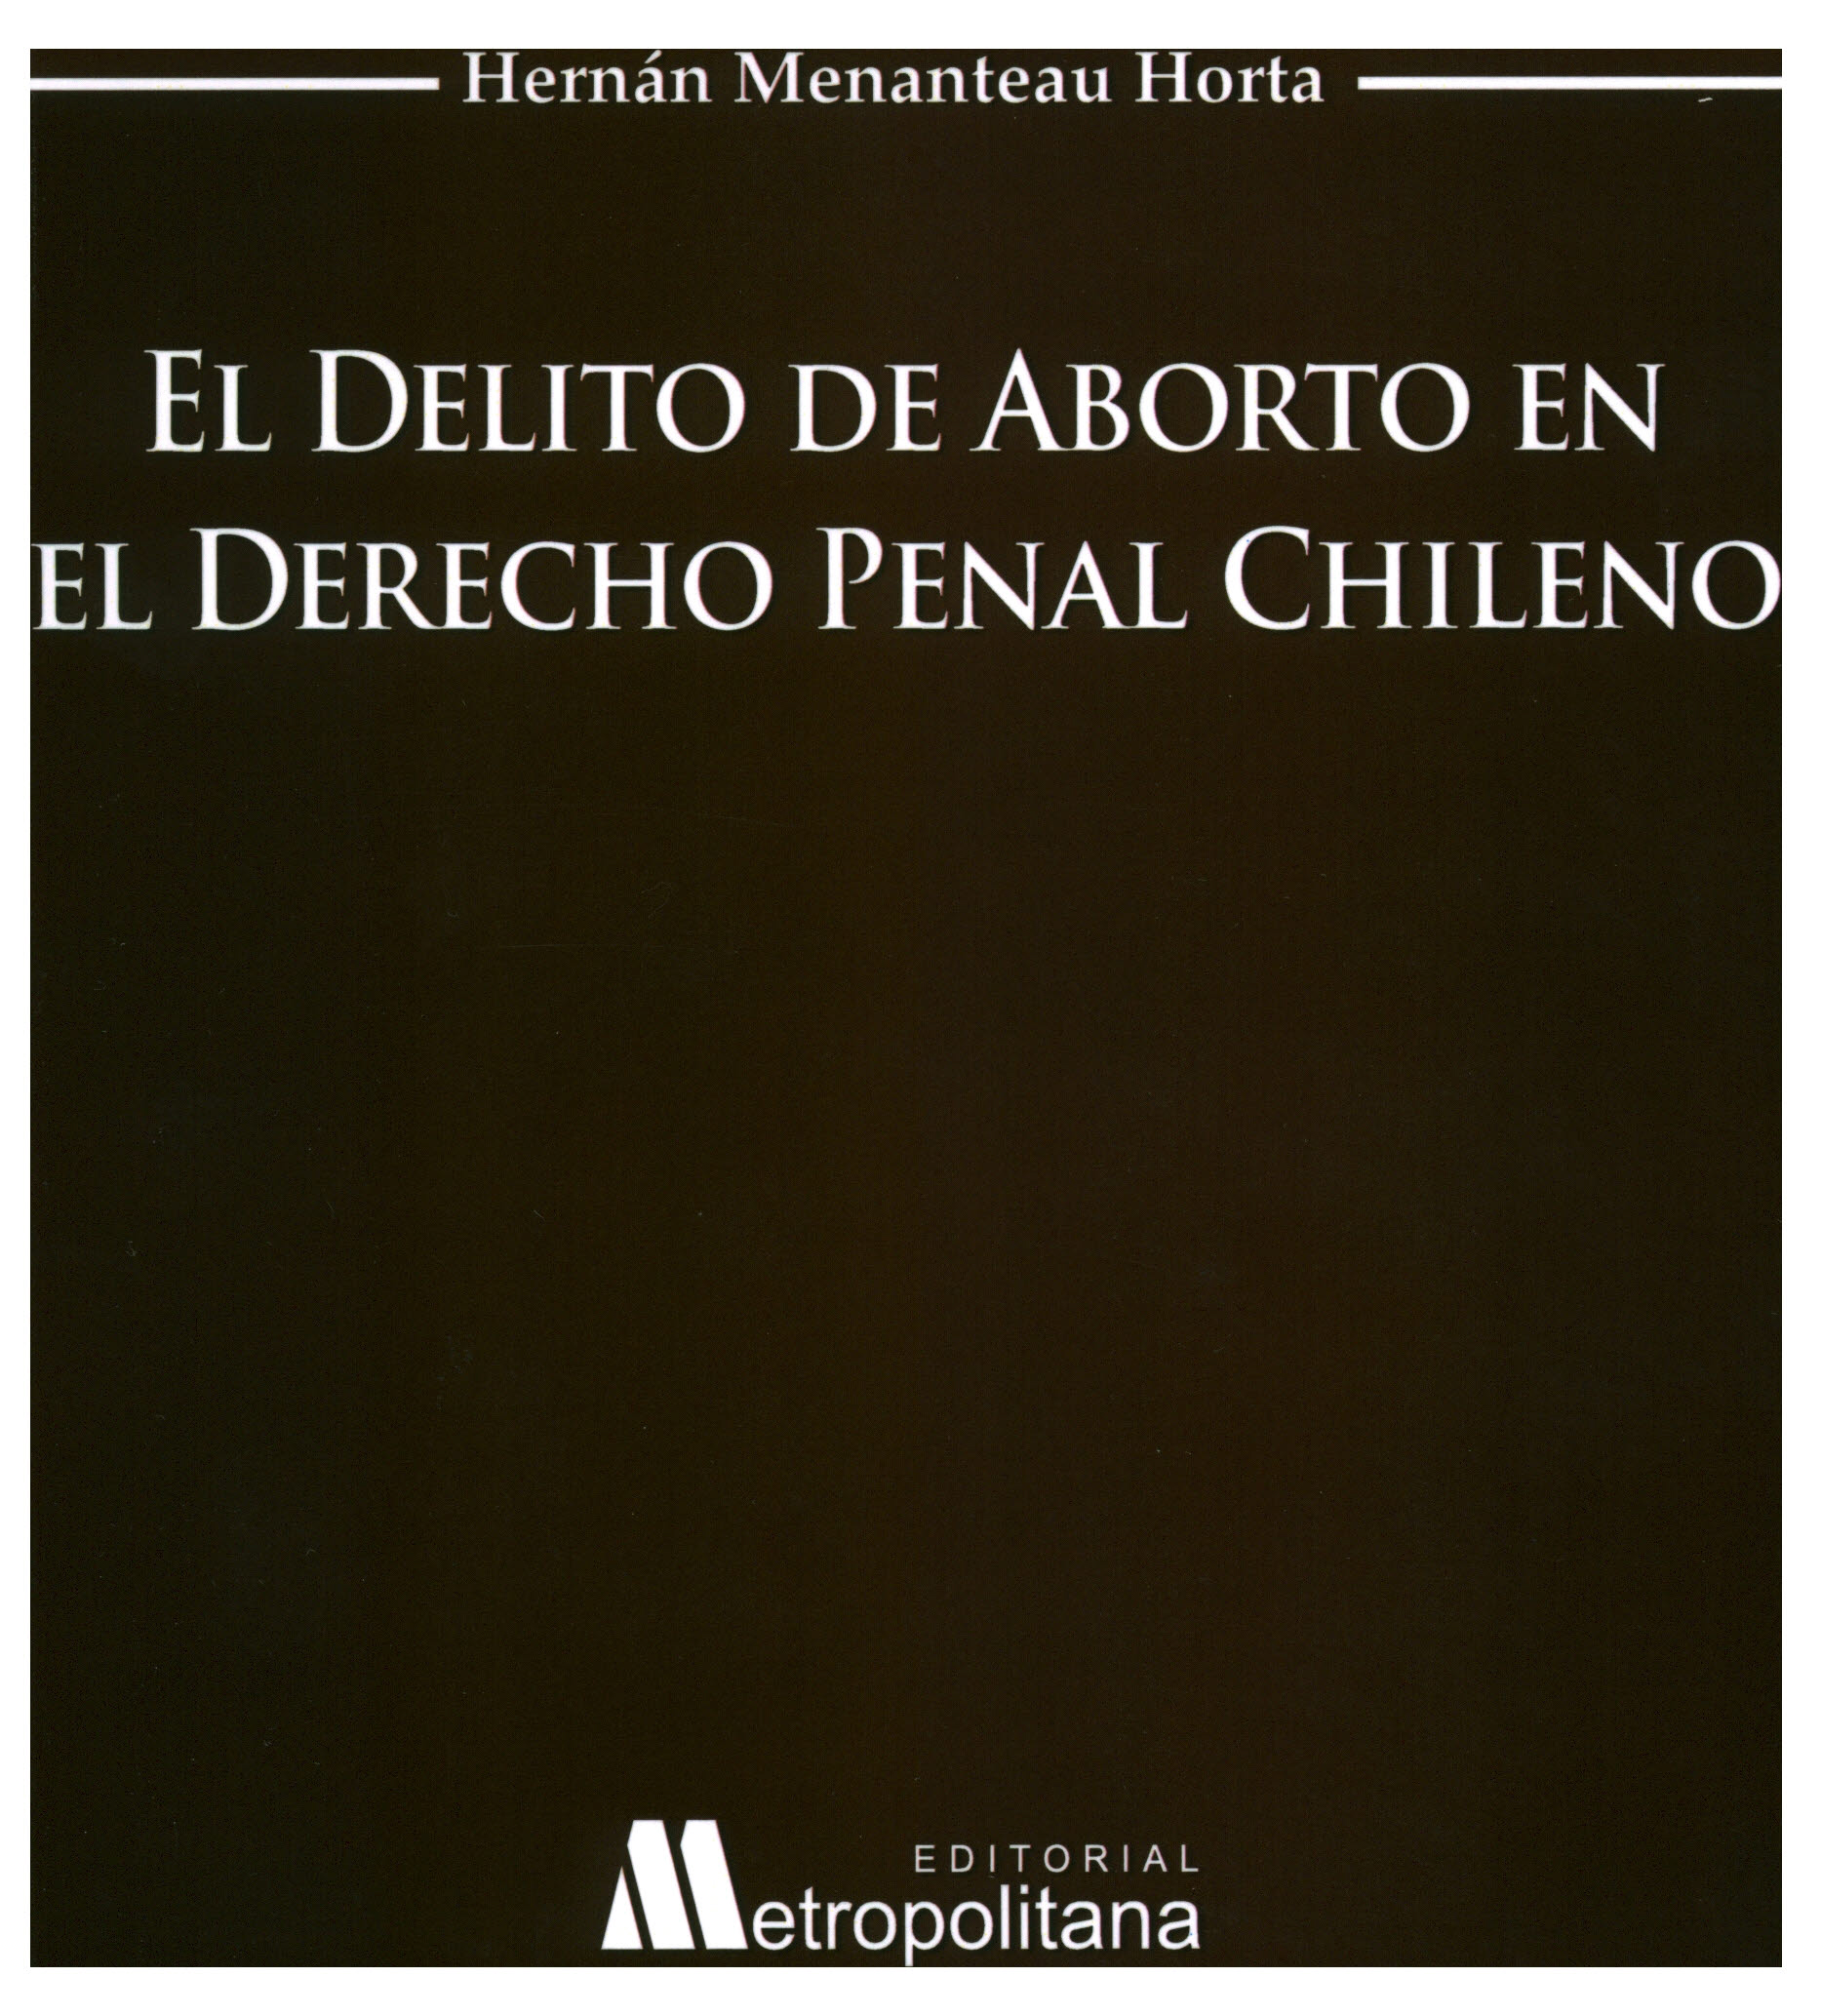 El delito de aborto en el derecho penal chileno